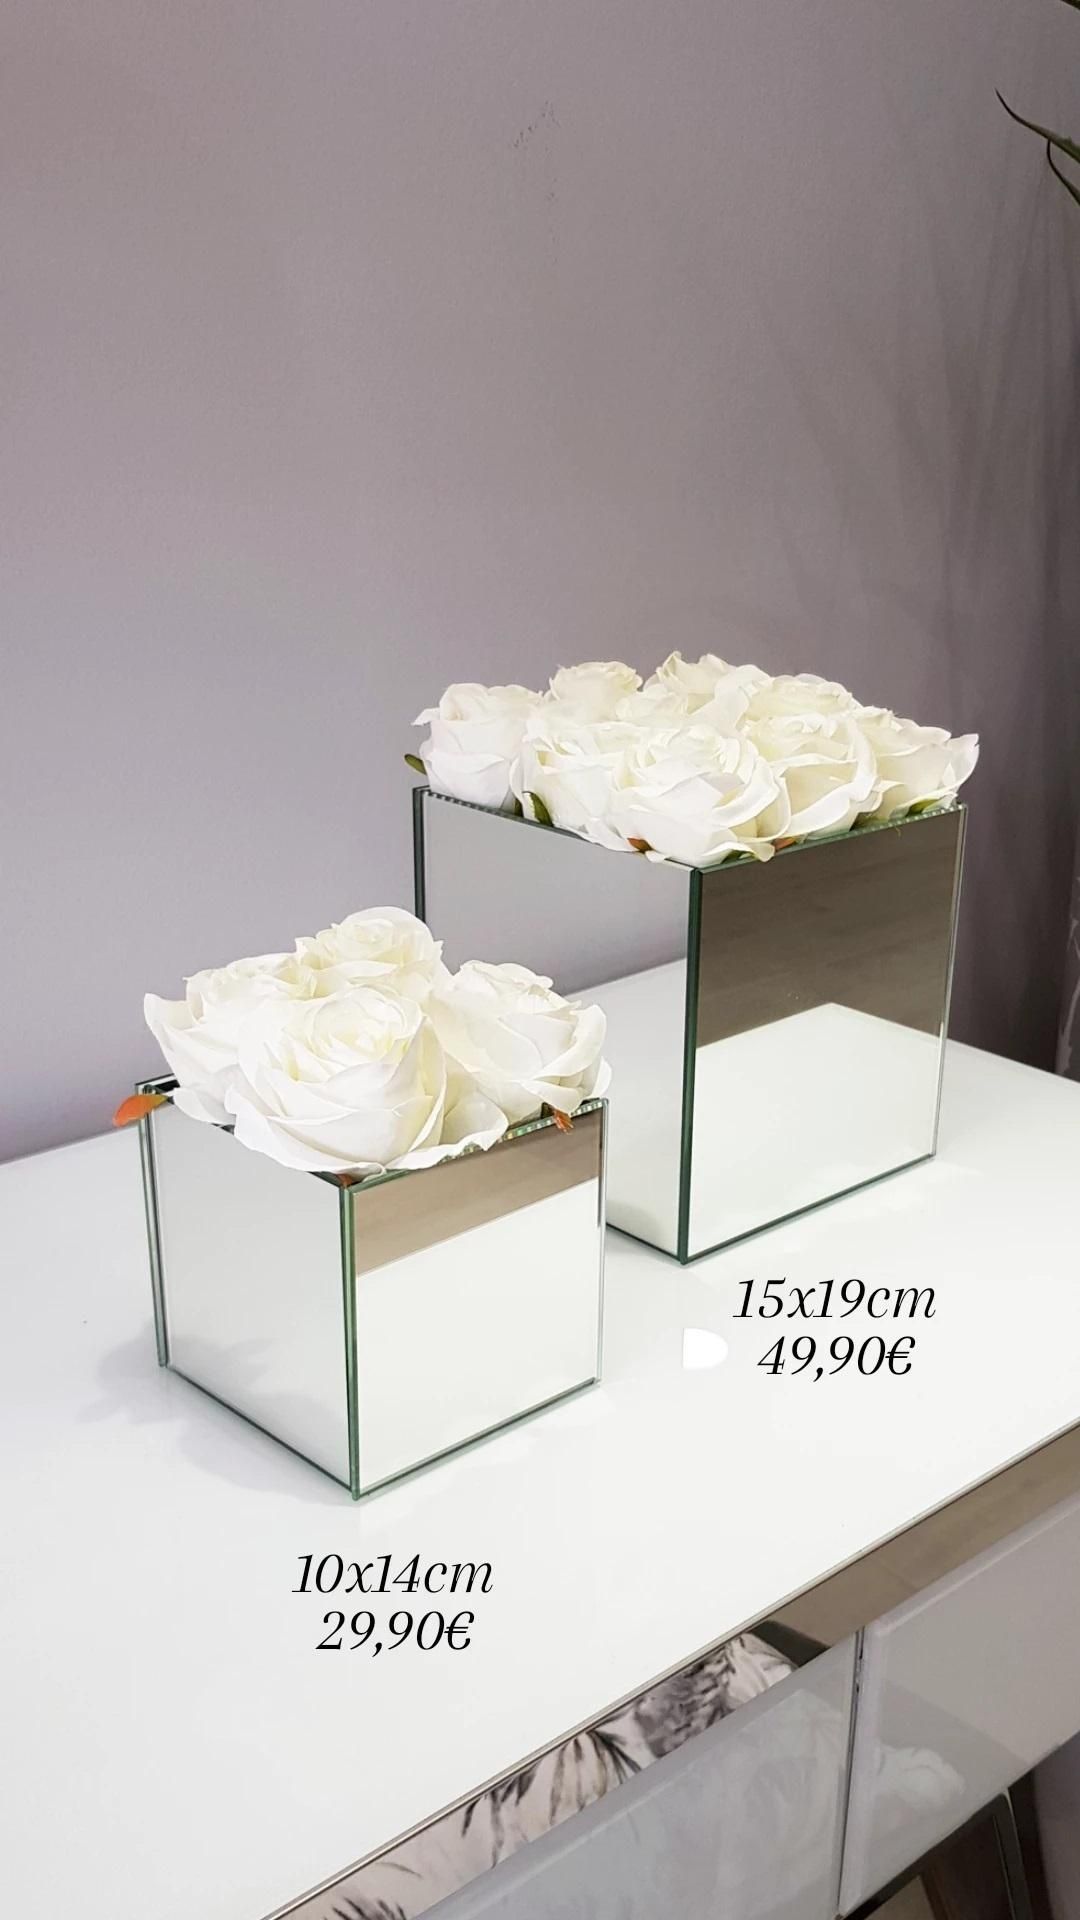 Cubos de Espelho Rosas Brancas - 2 Medidas By Arcoazul Design